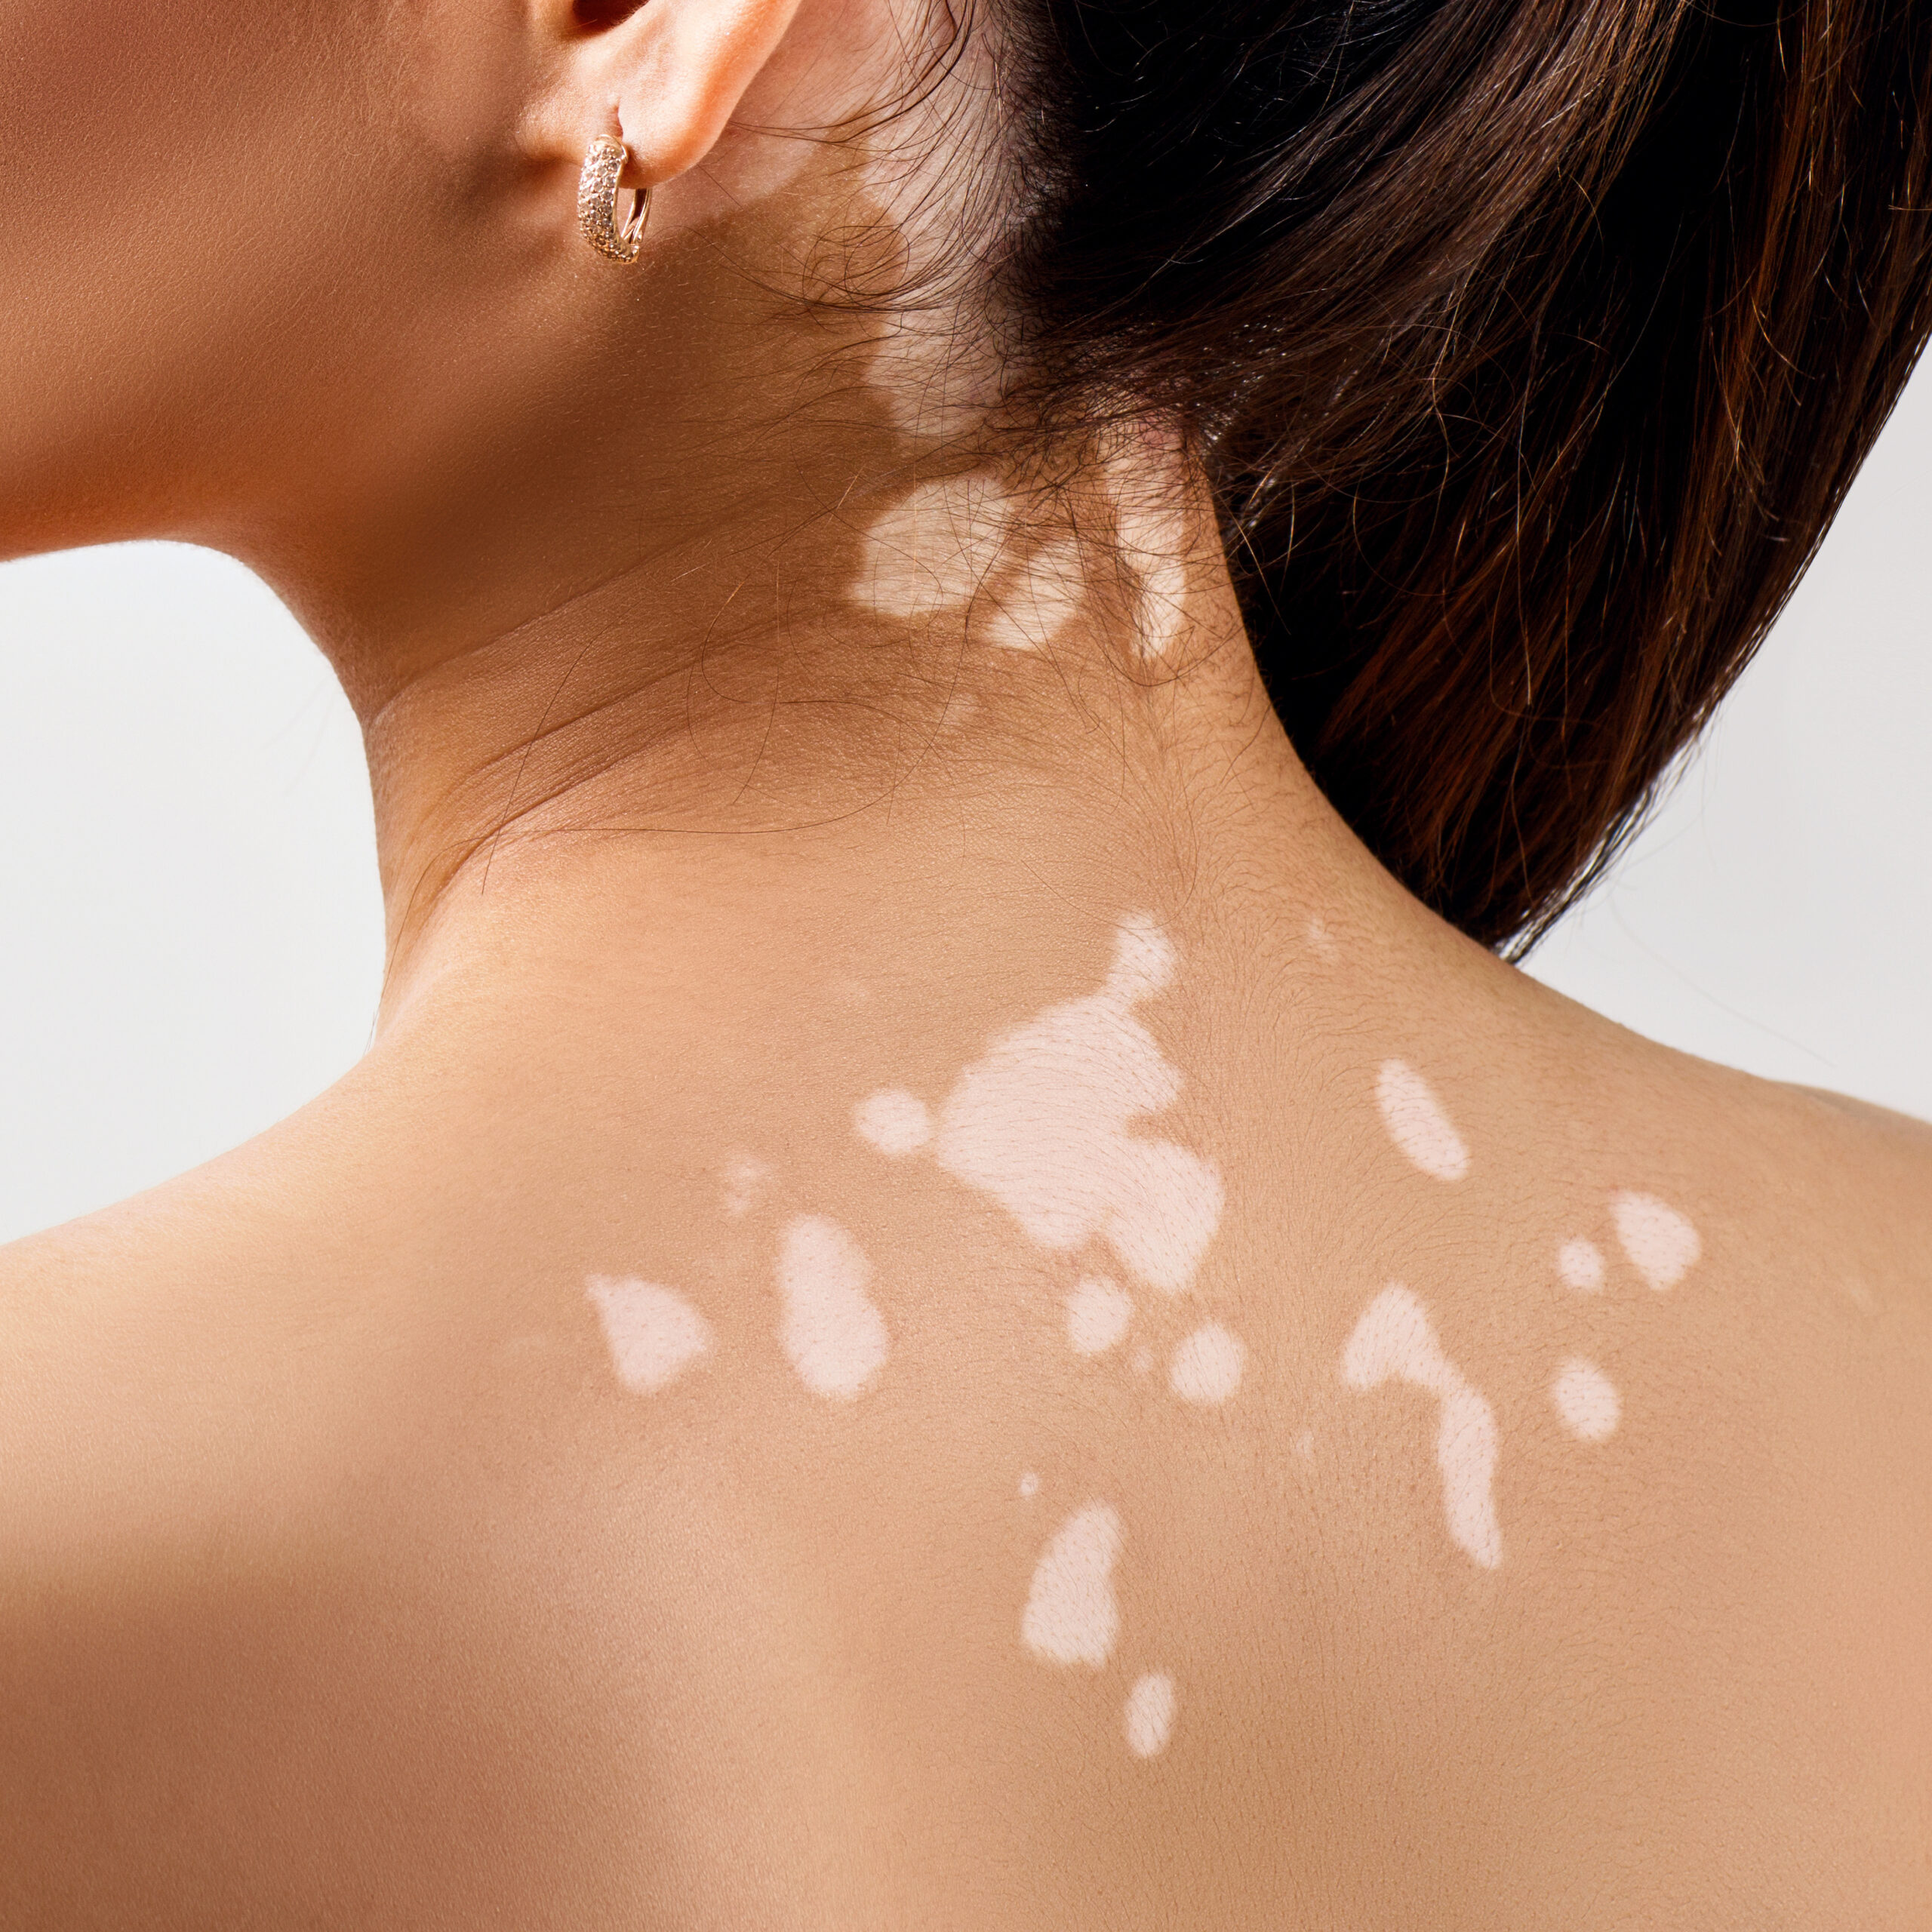 Vitiligo on a person's upper back